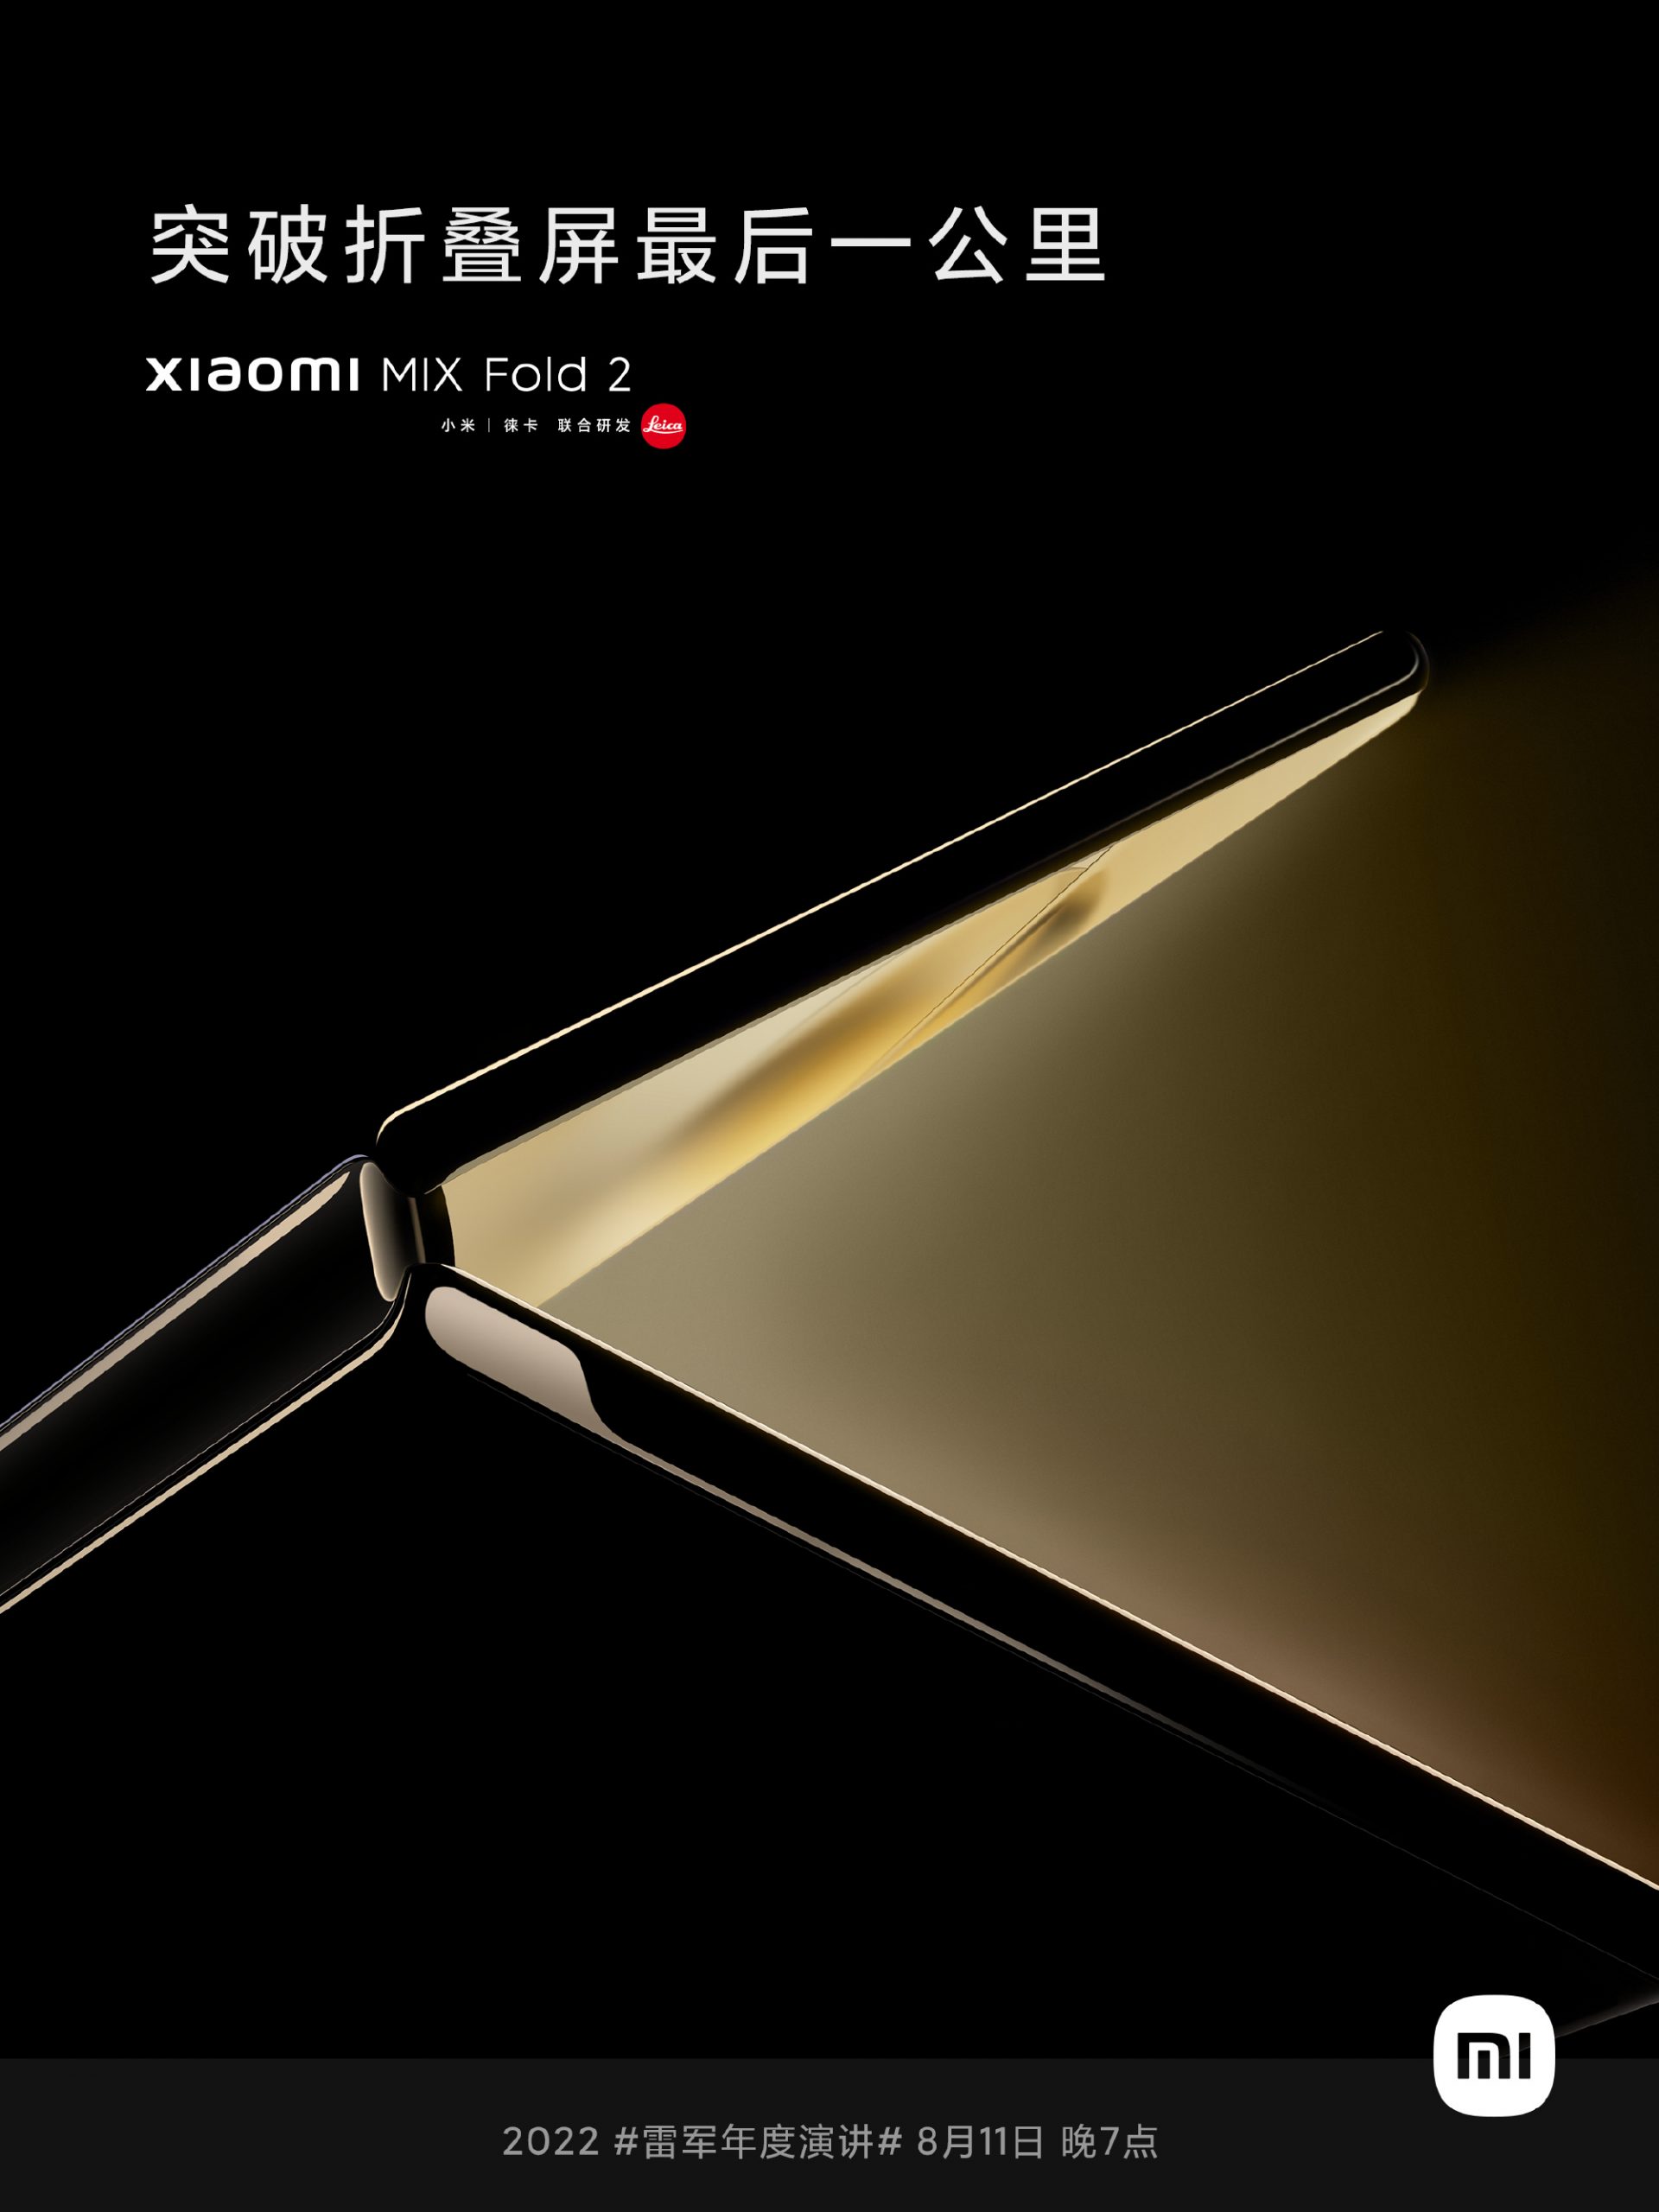 Xiaomi MIX Fold 2 launch date